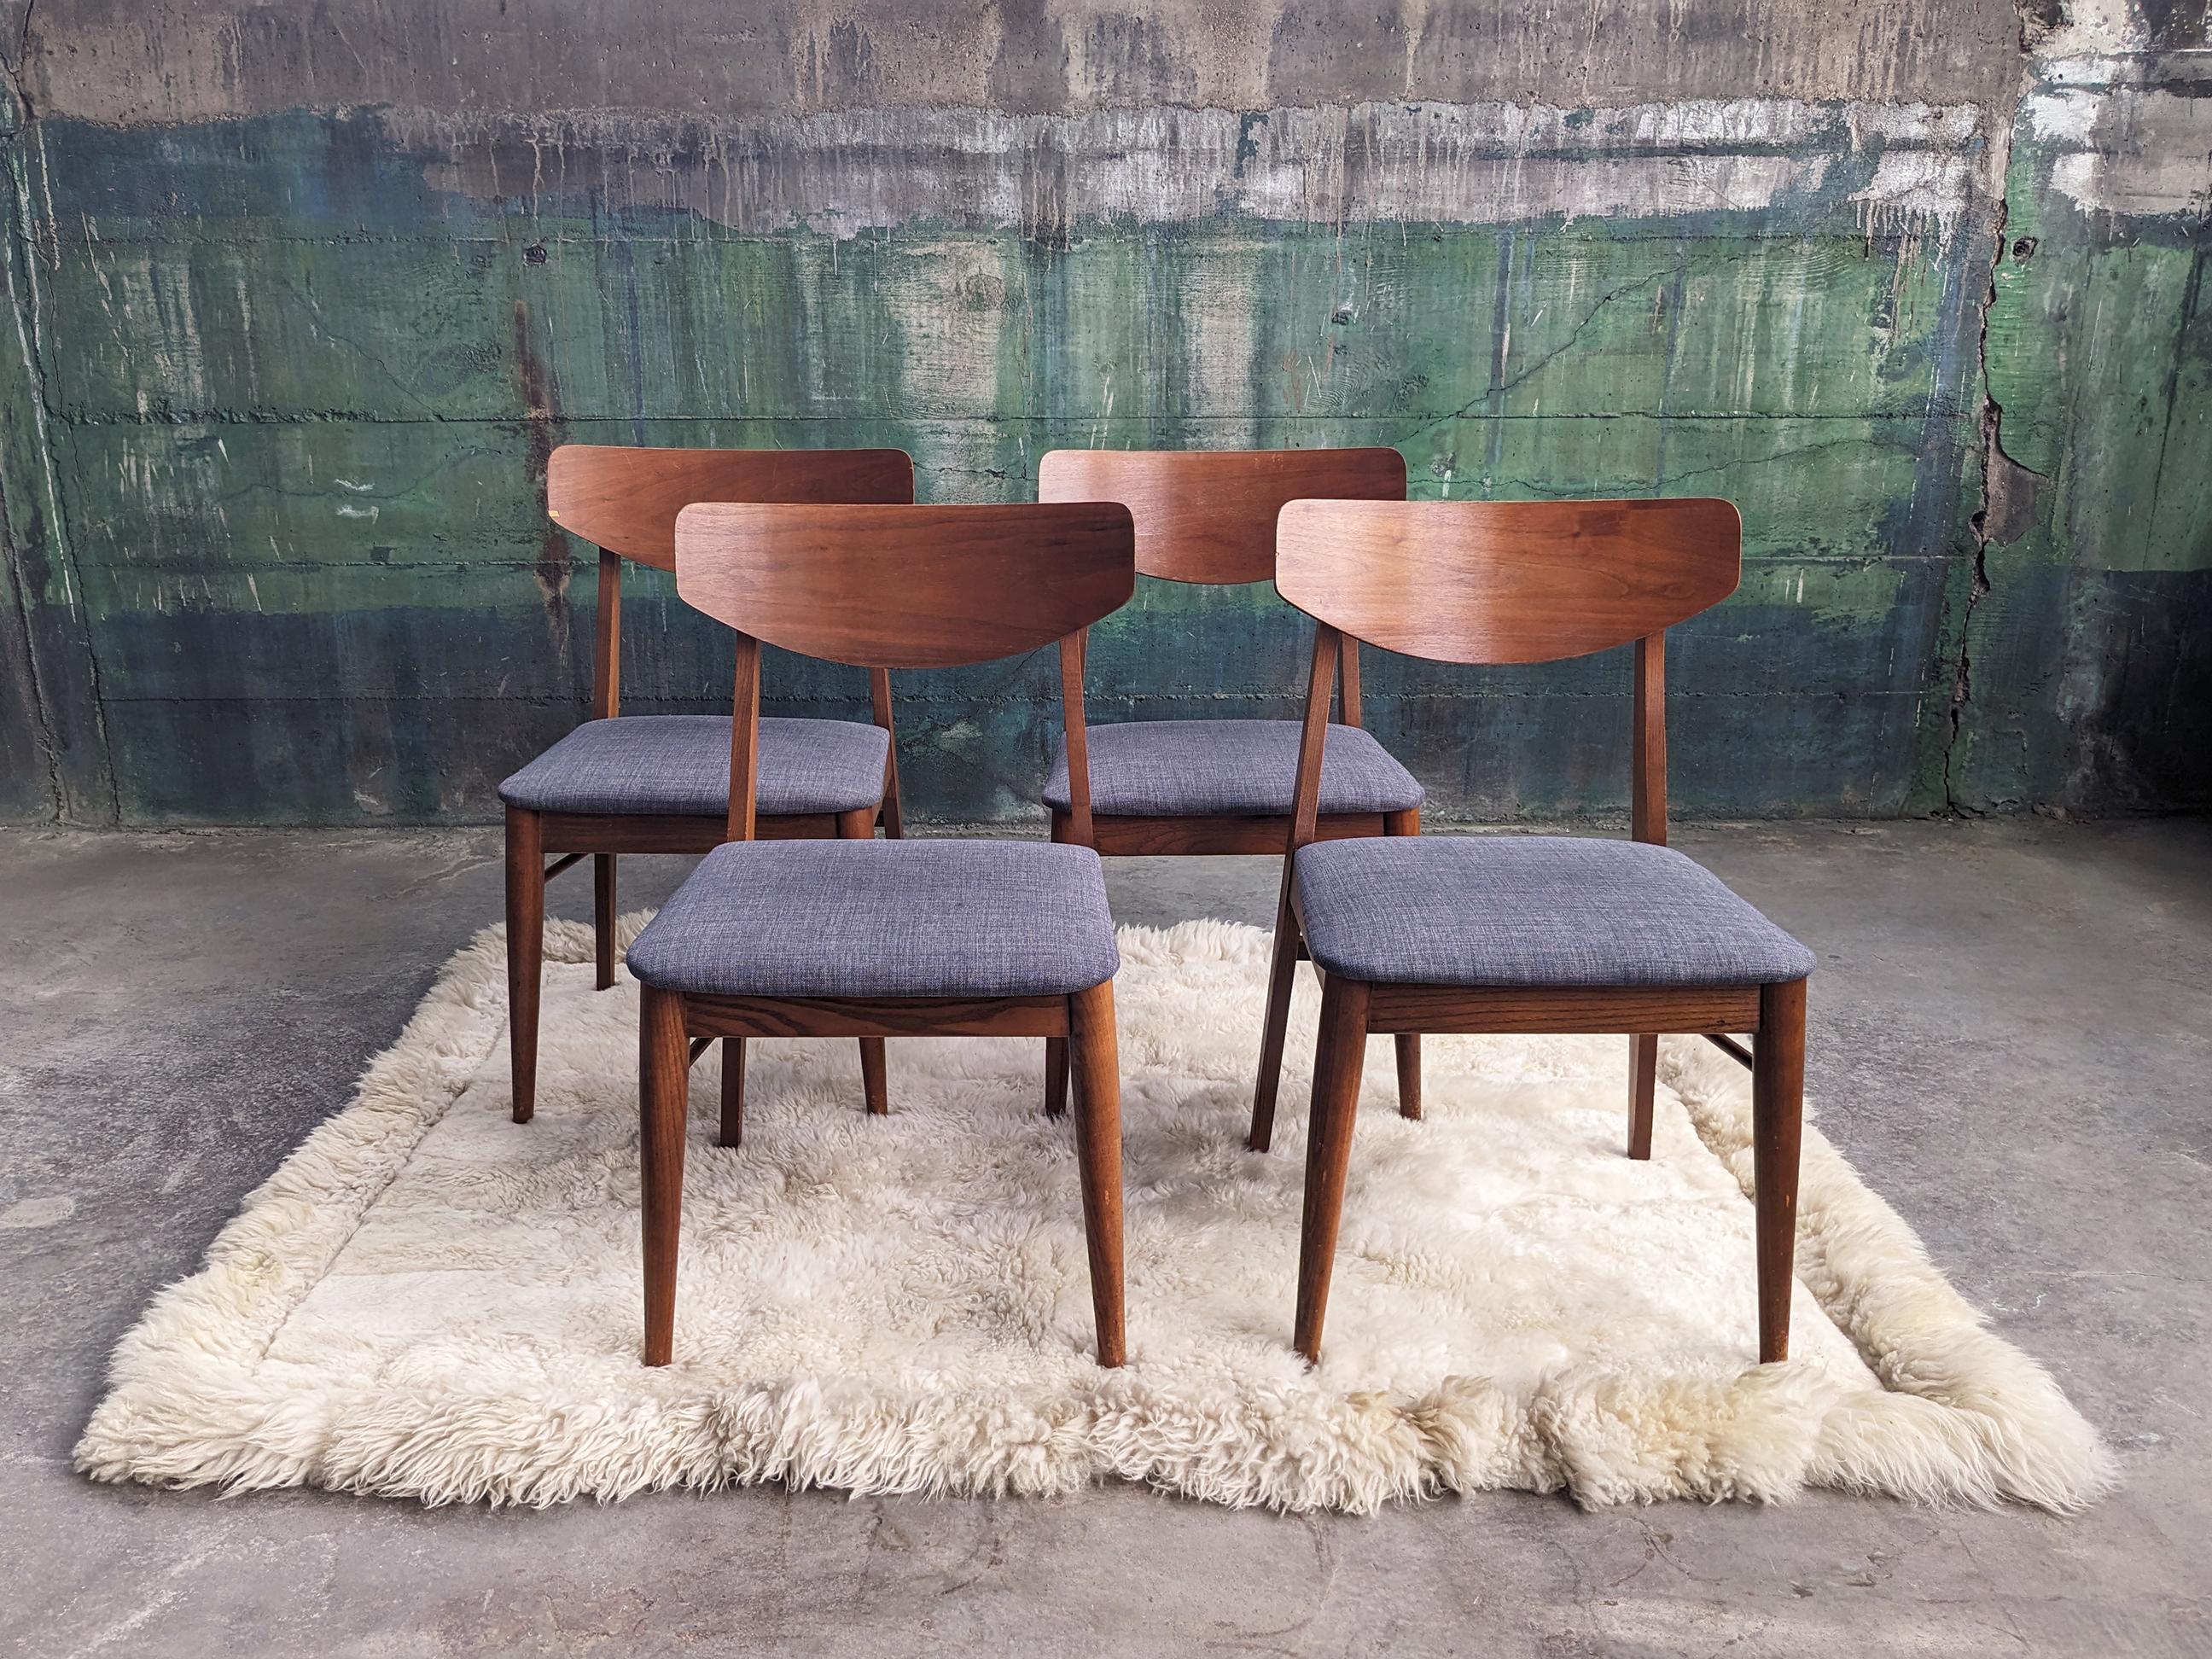 Magnifique et très haut de gamme ensemble de quatre chaises de salle à manger en noyer, pour Stanley Furniture par Paul Browning, vers les années 1960.

Ces chaises sont en excellent état et semblent n'avoir été que très peu utilisées. Elles ont été